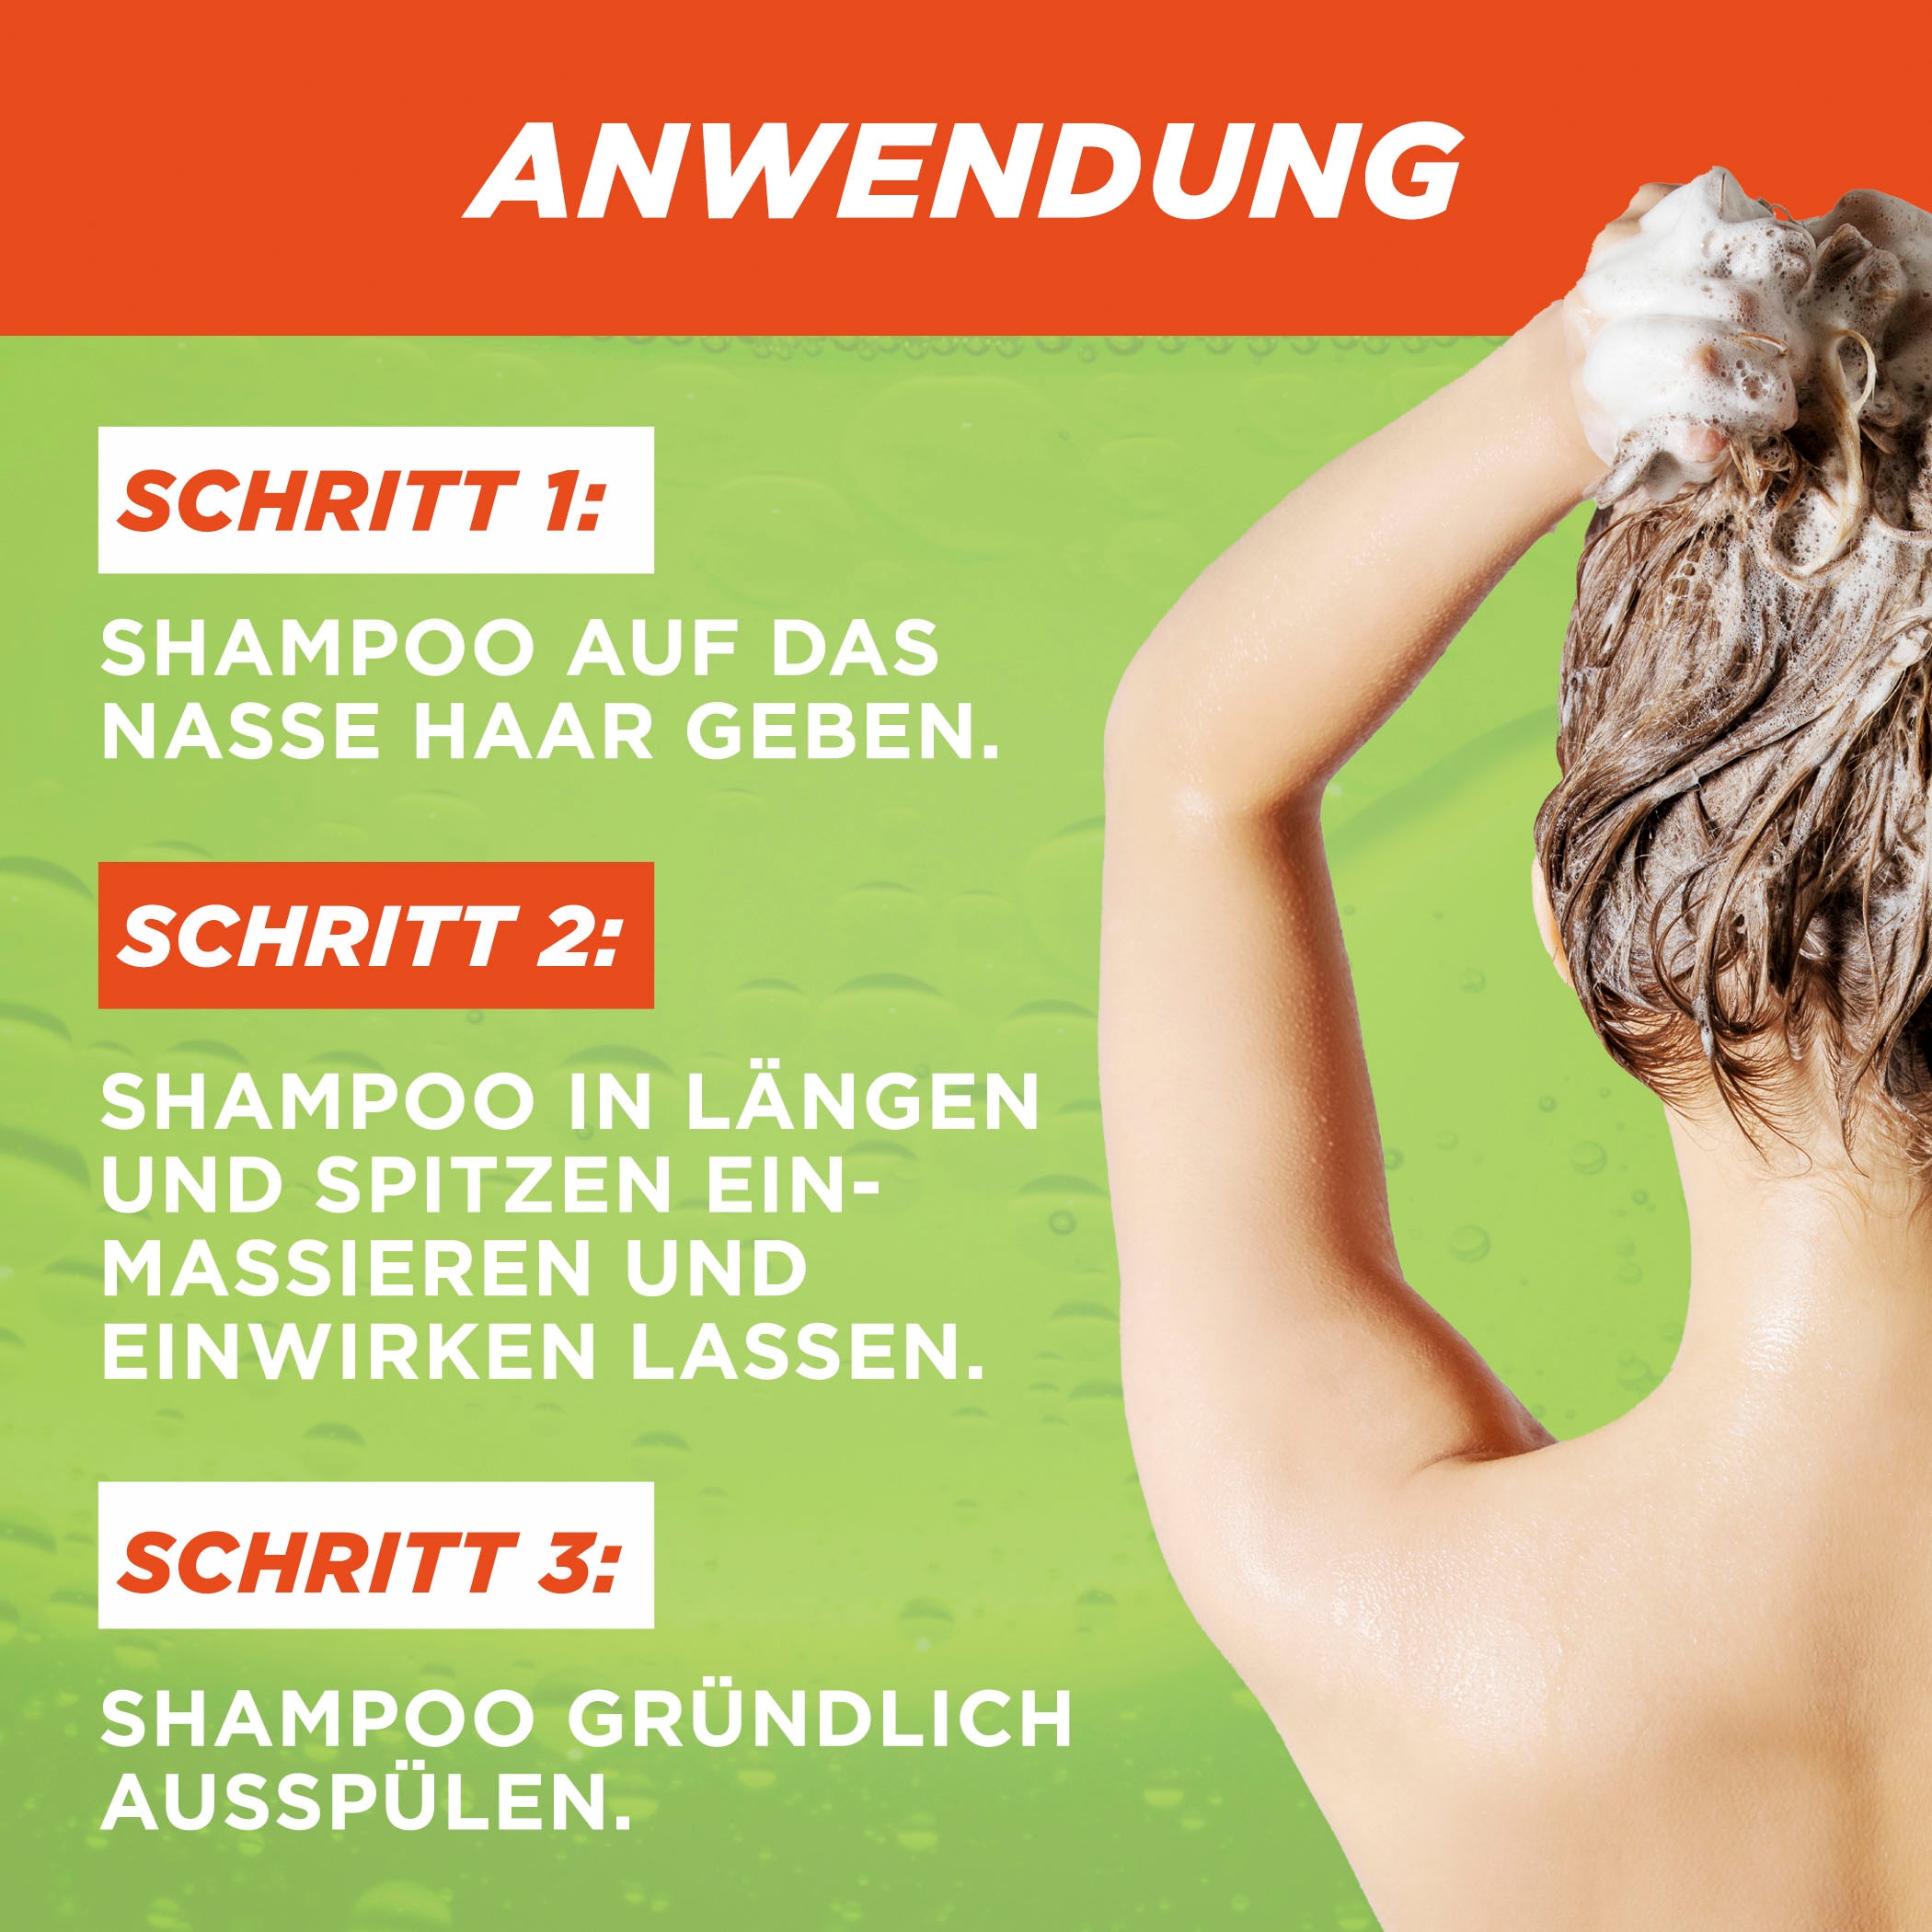 GARNIER Haarshampoo »Garnier Fructis Vitamine & Kraft Shampoo« online bei  UNIVERSAL